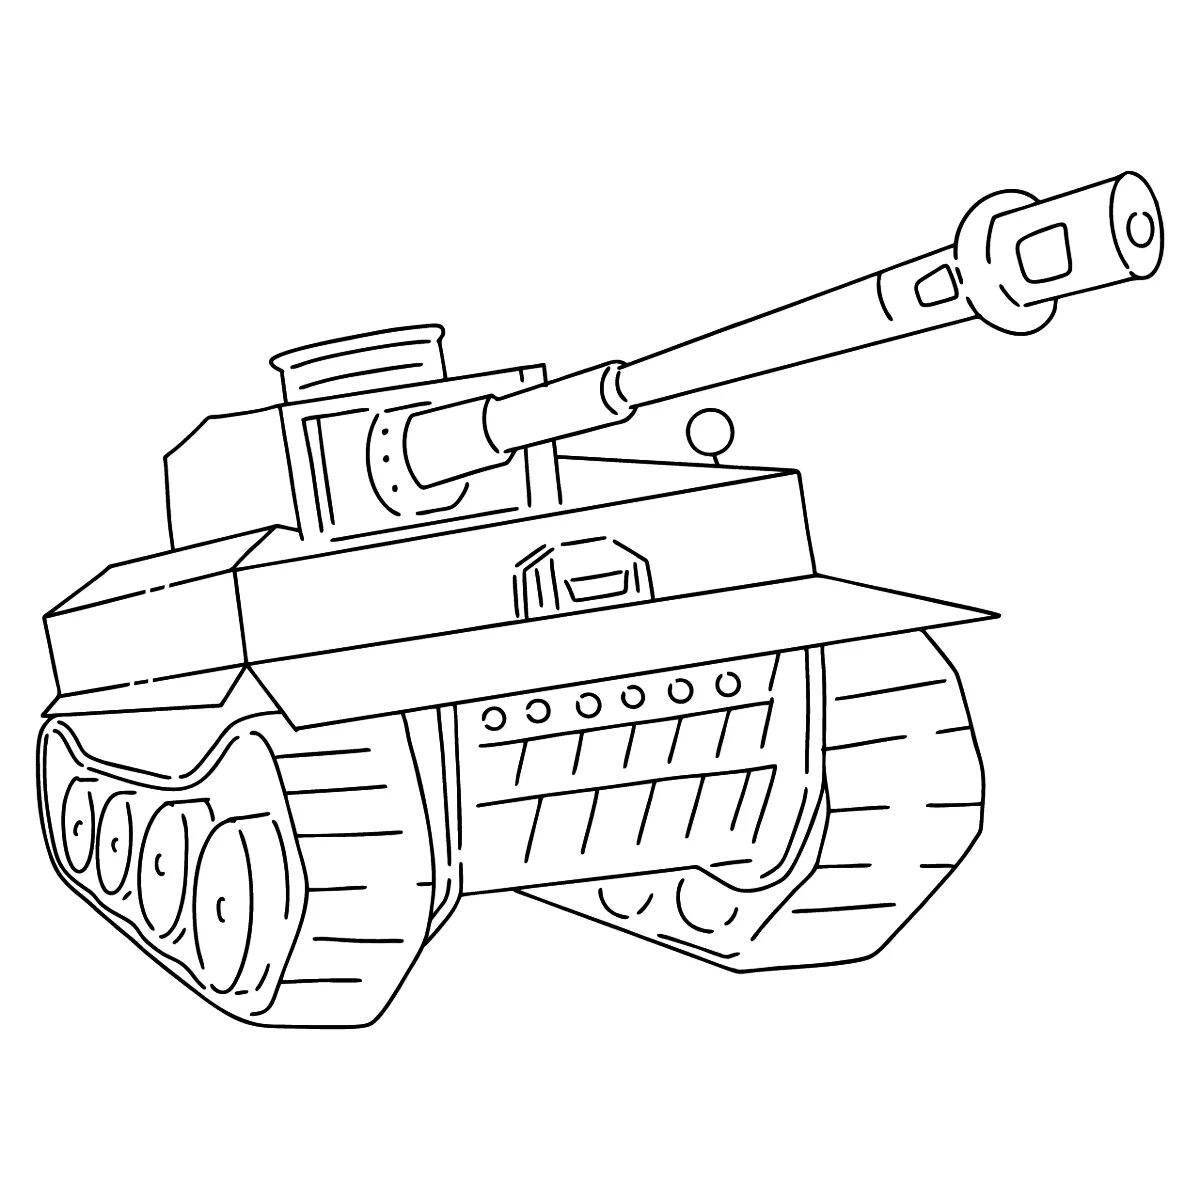 Элегантная раскраска танк пантеры